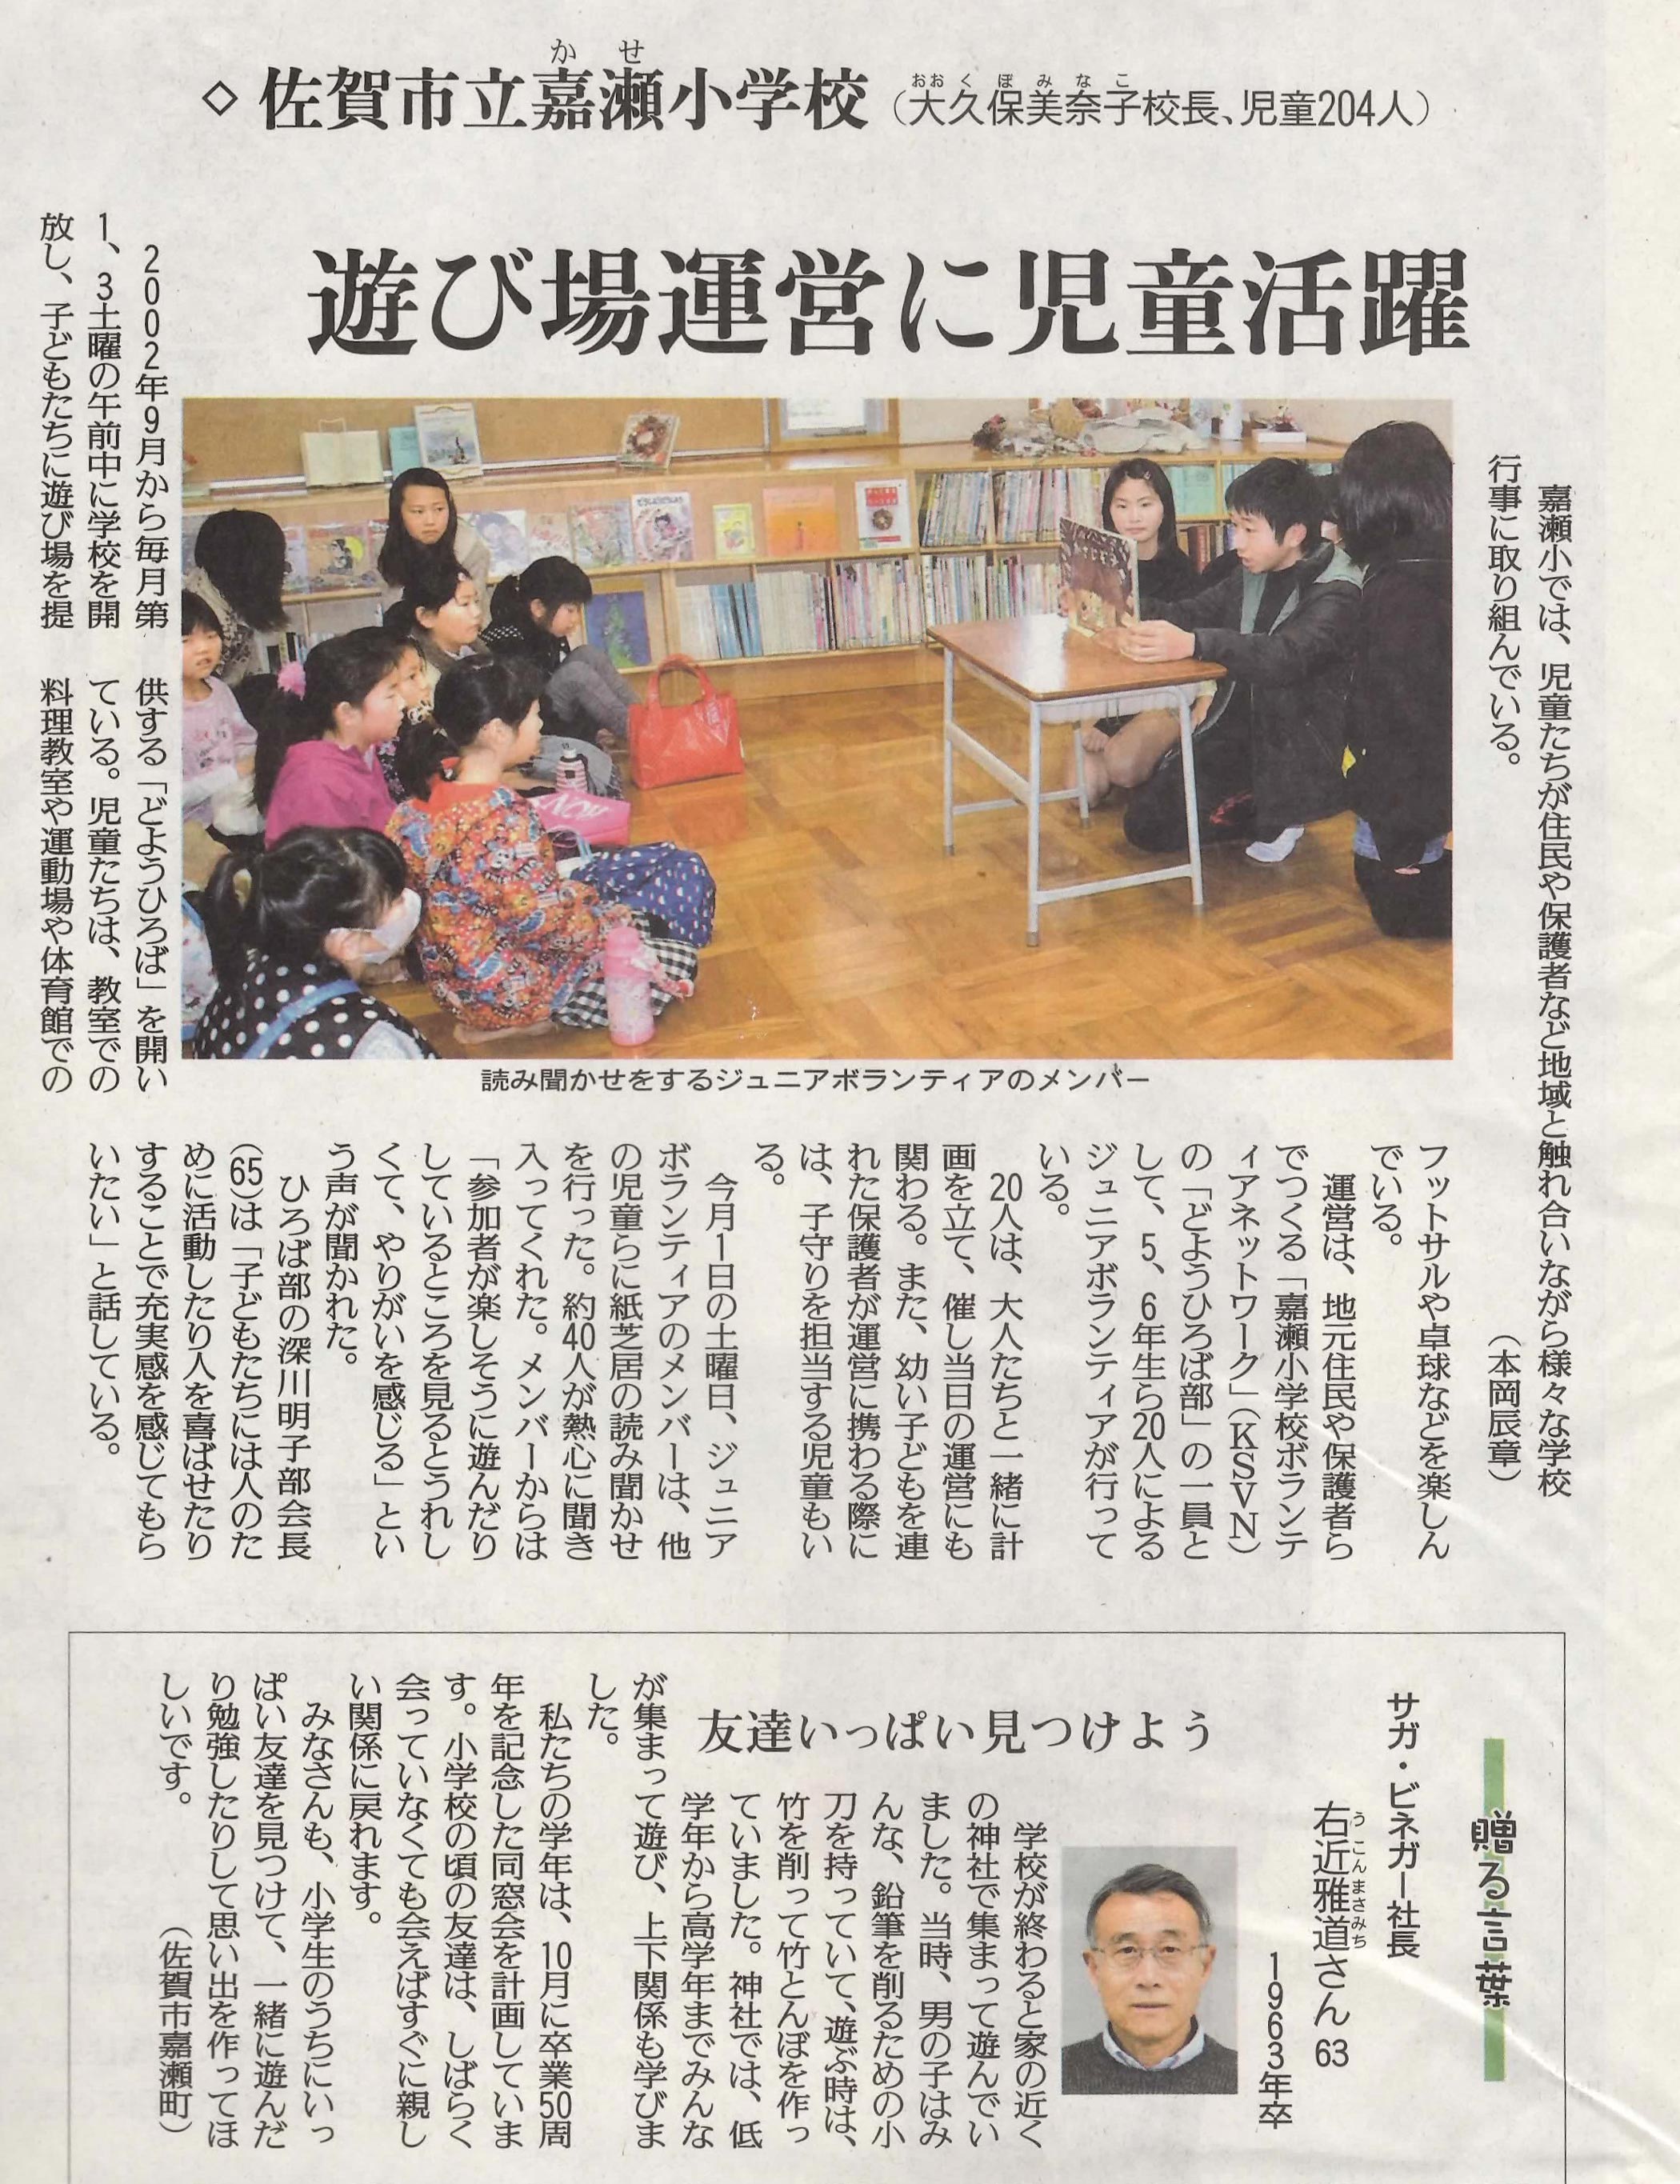 新聞掲載　2014年(平成26年)3月14日　佐賀新聞　「贈る言葉」